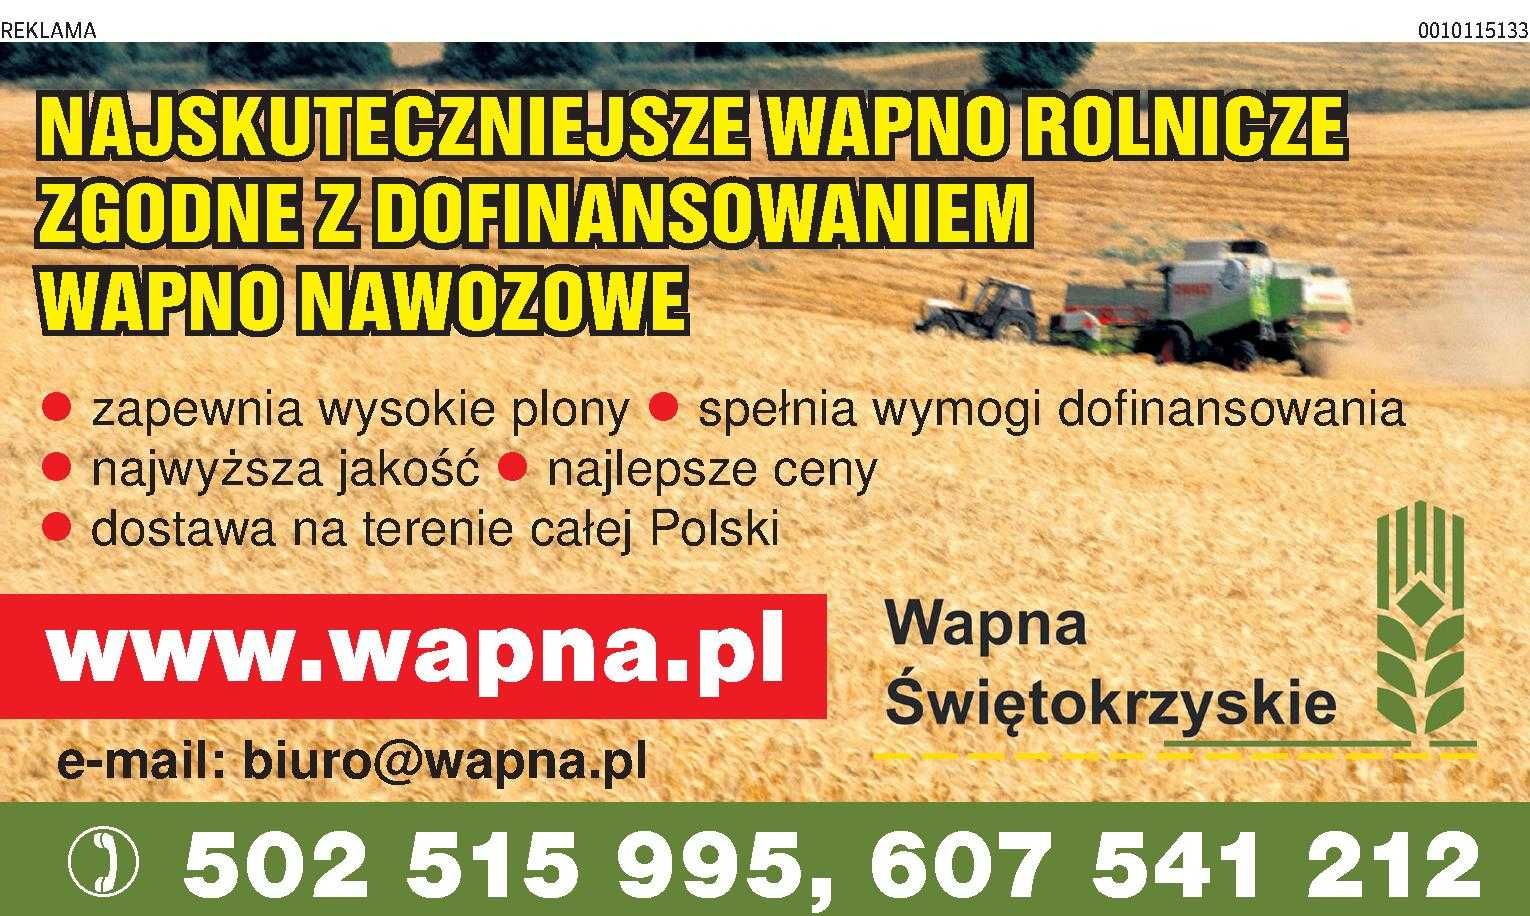 Wapno nawozowe Kreda nawozowa Magnezowe, Tlenkowe, Dotacje Polska!